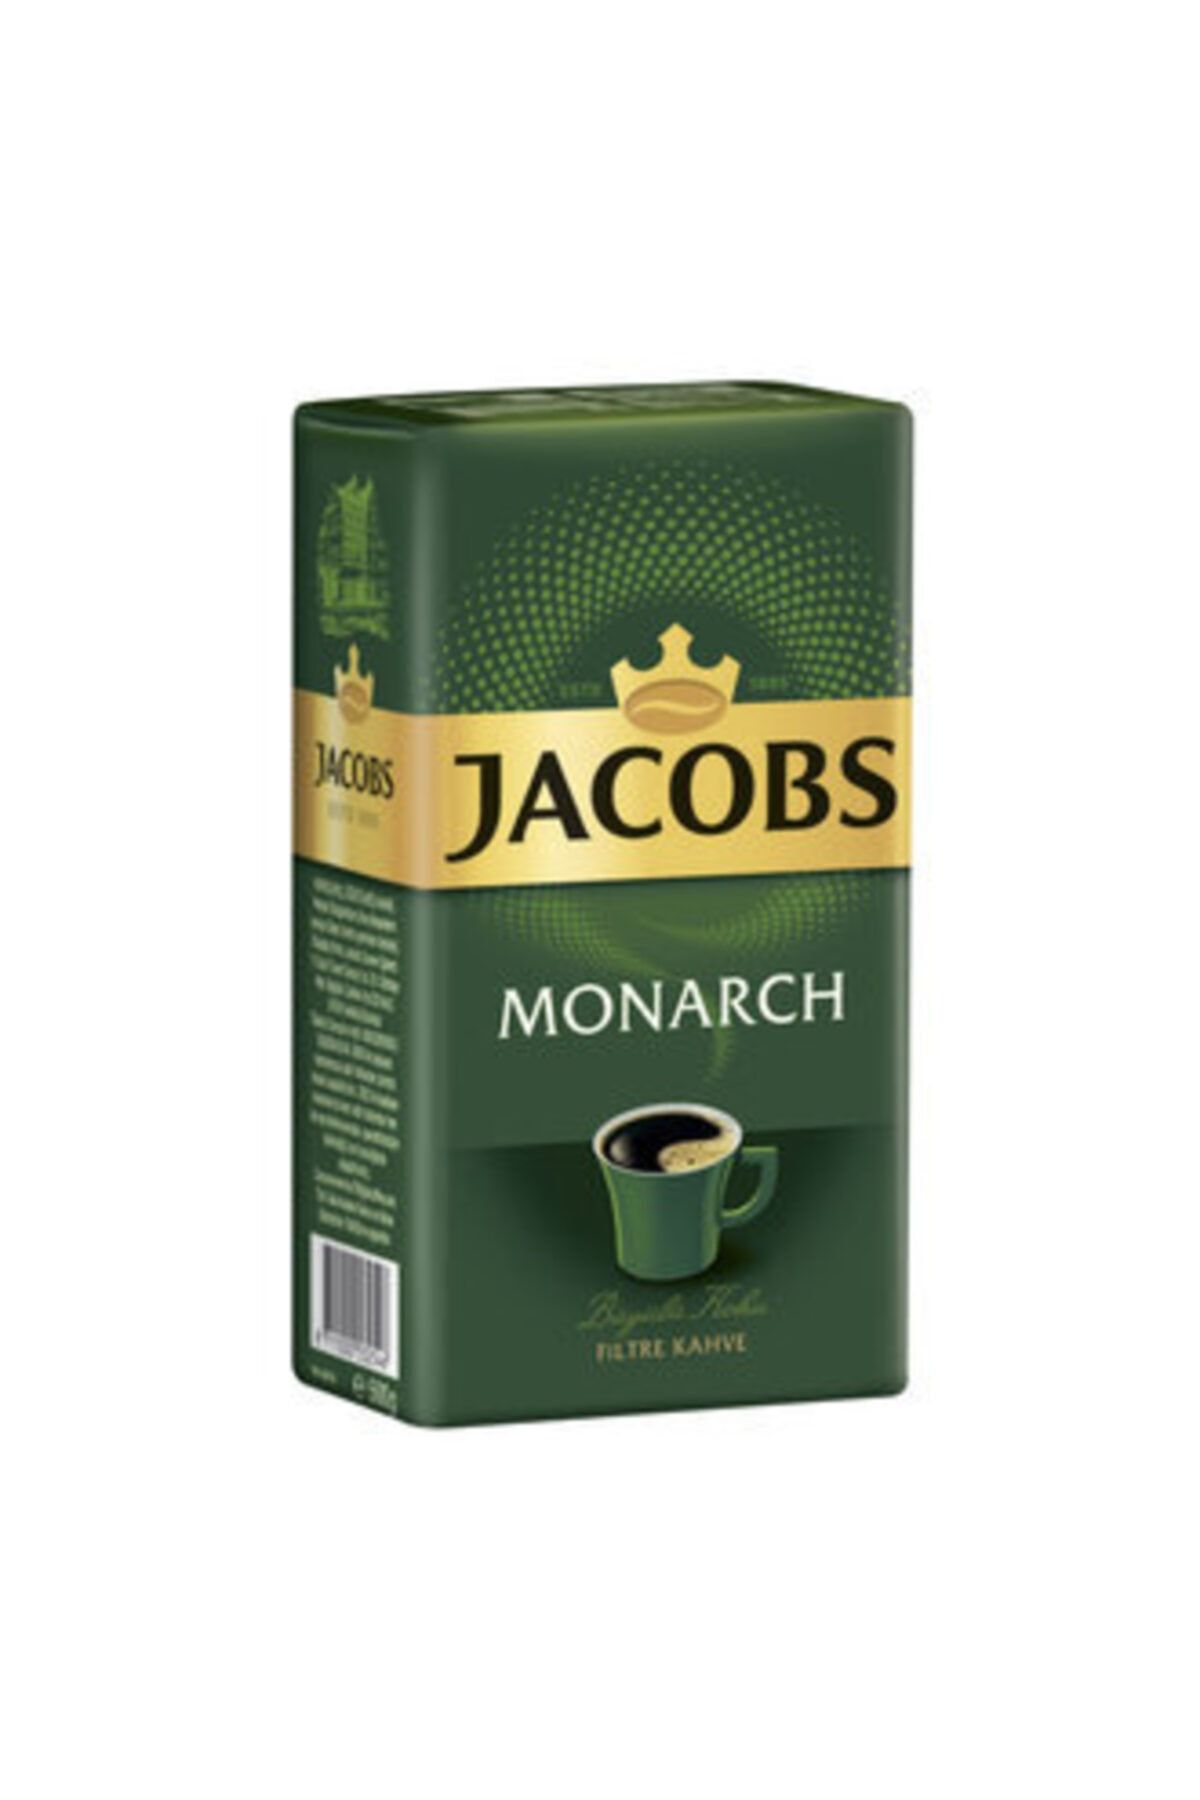 Jacobs Filtre Kahve (filter Coffee) 500 Gr